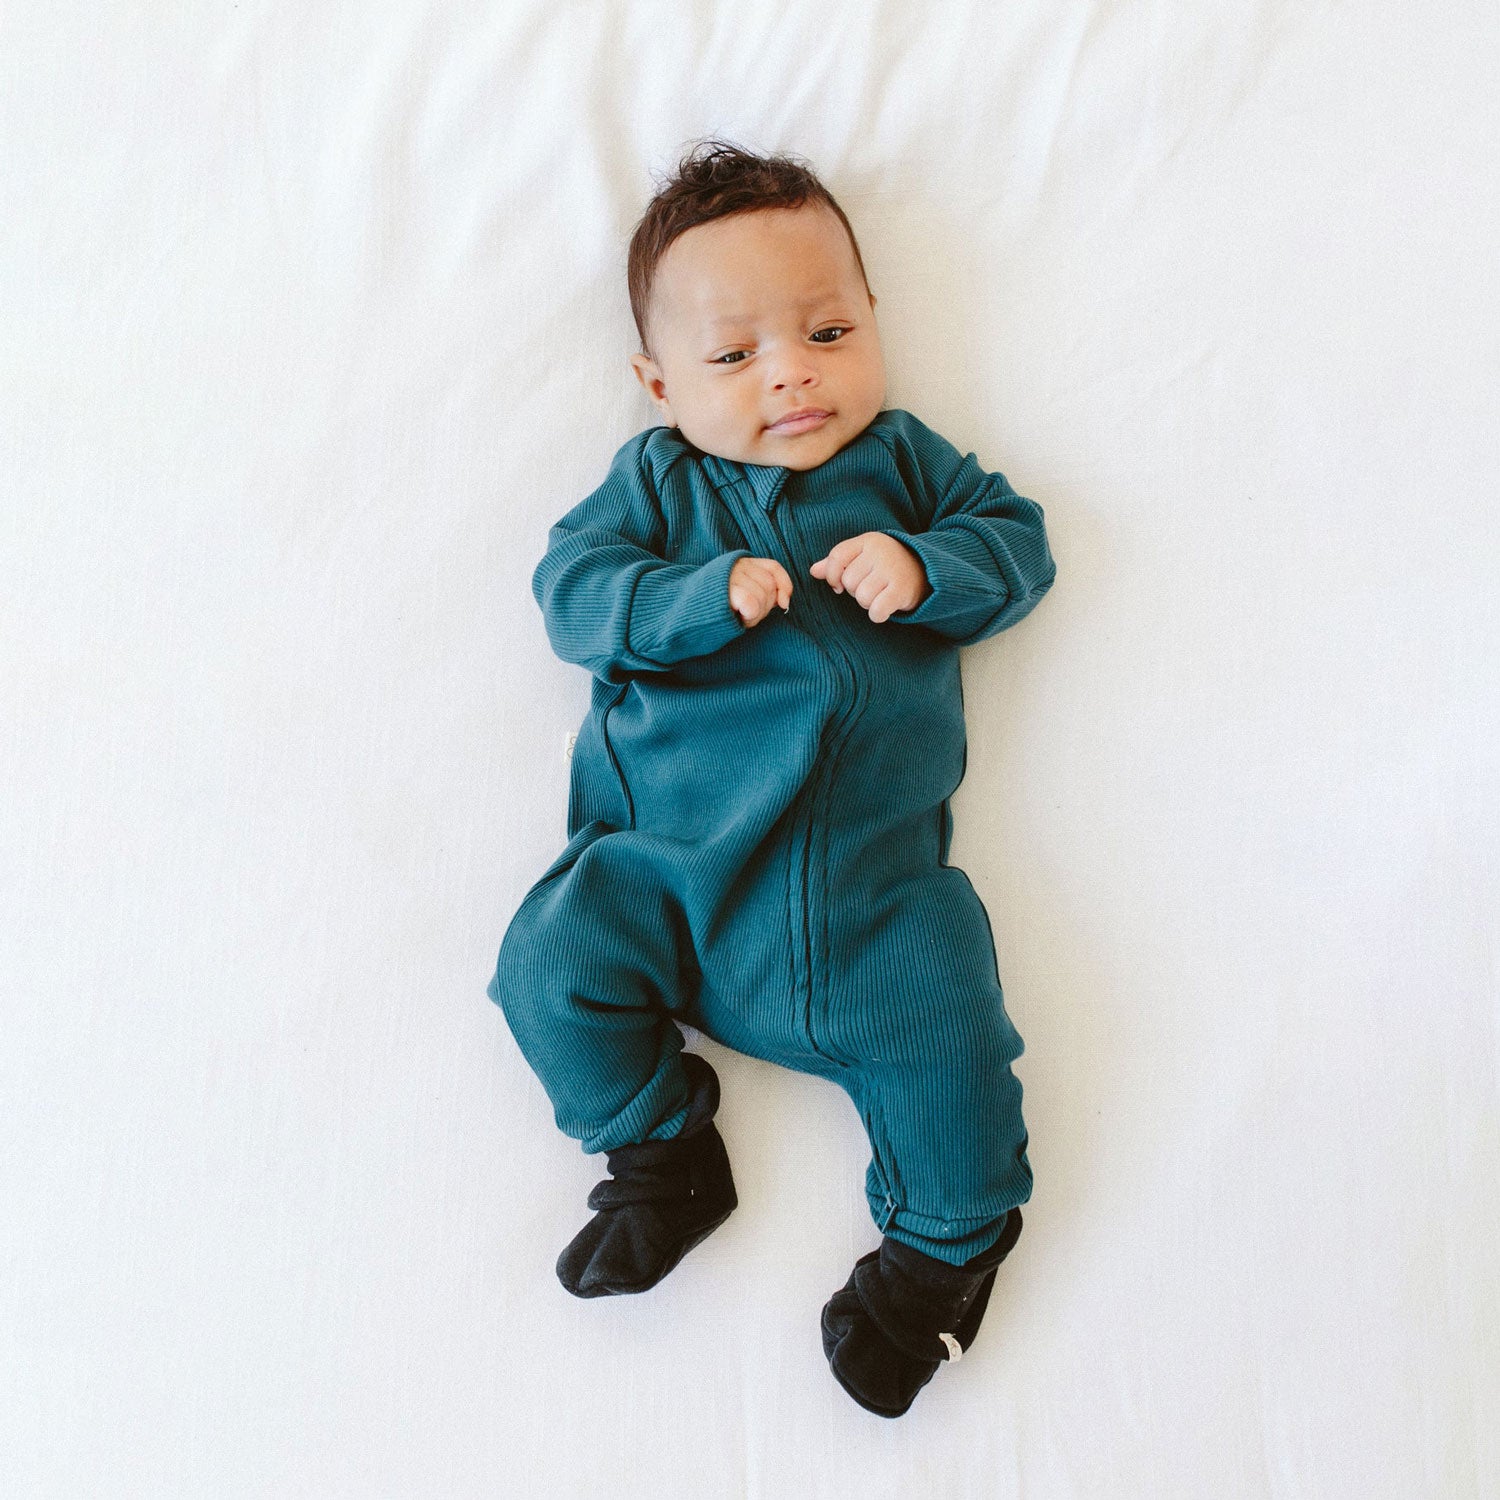 Baby wearing goumikids Long Sleeve Zipper One-Piece - Hudson